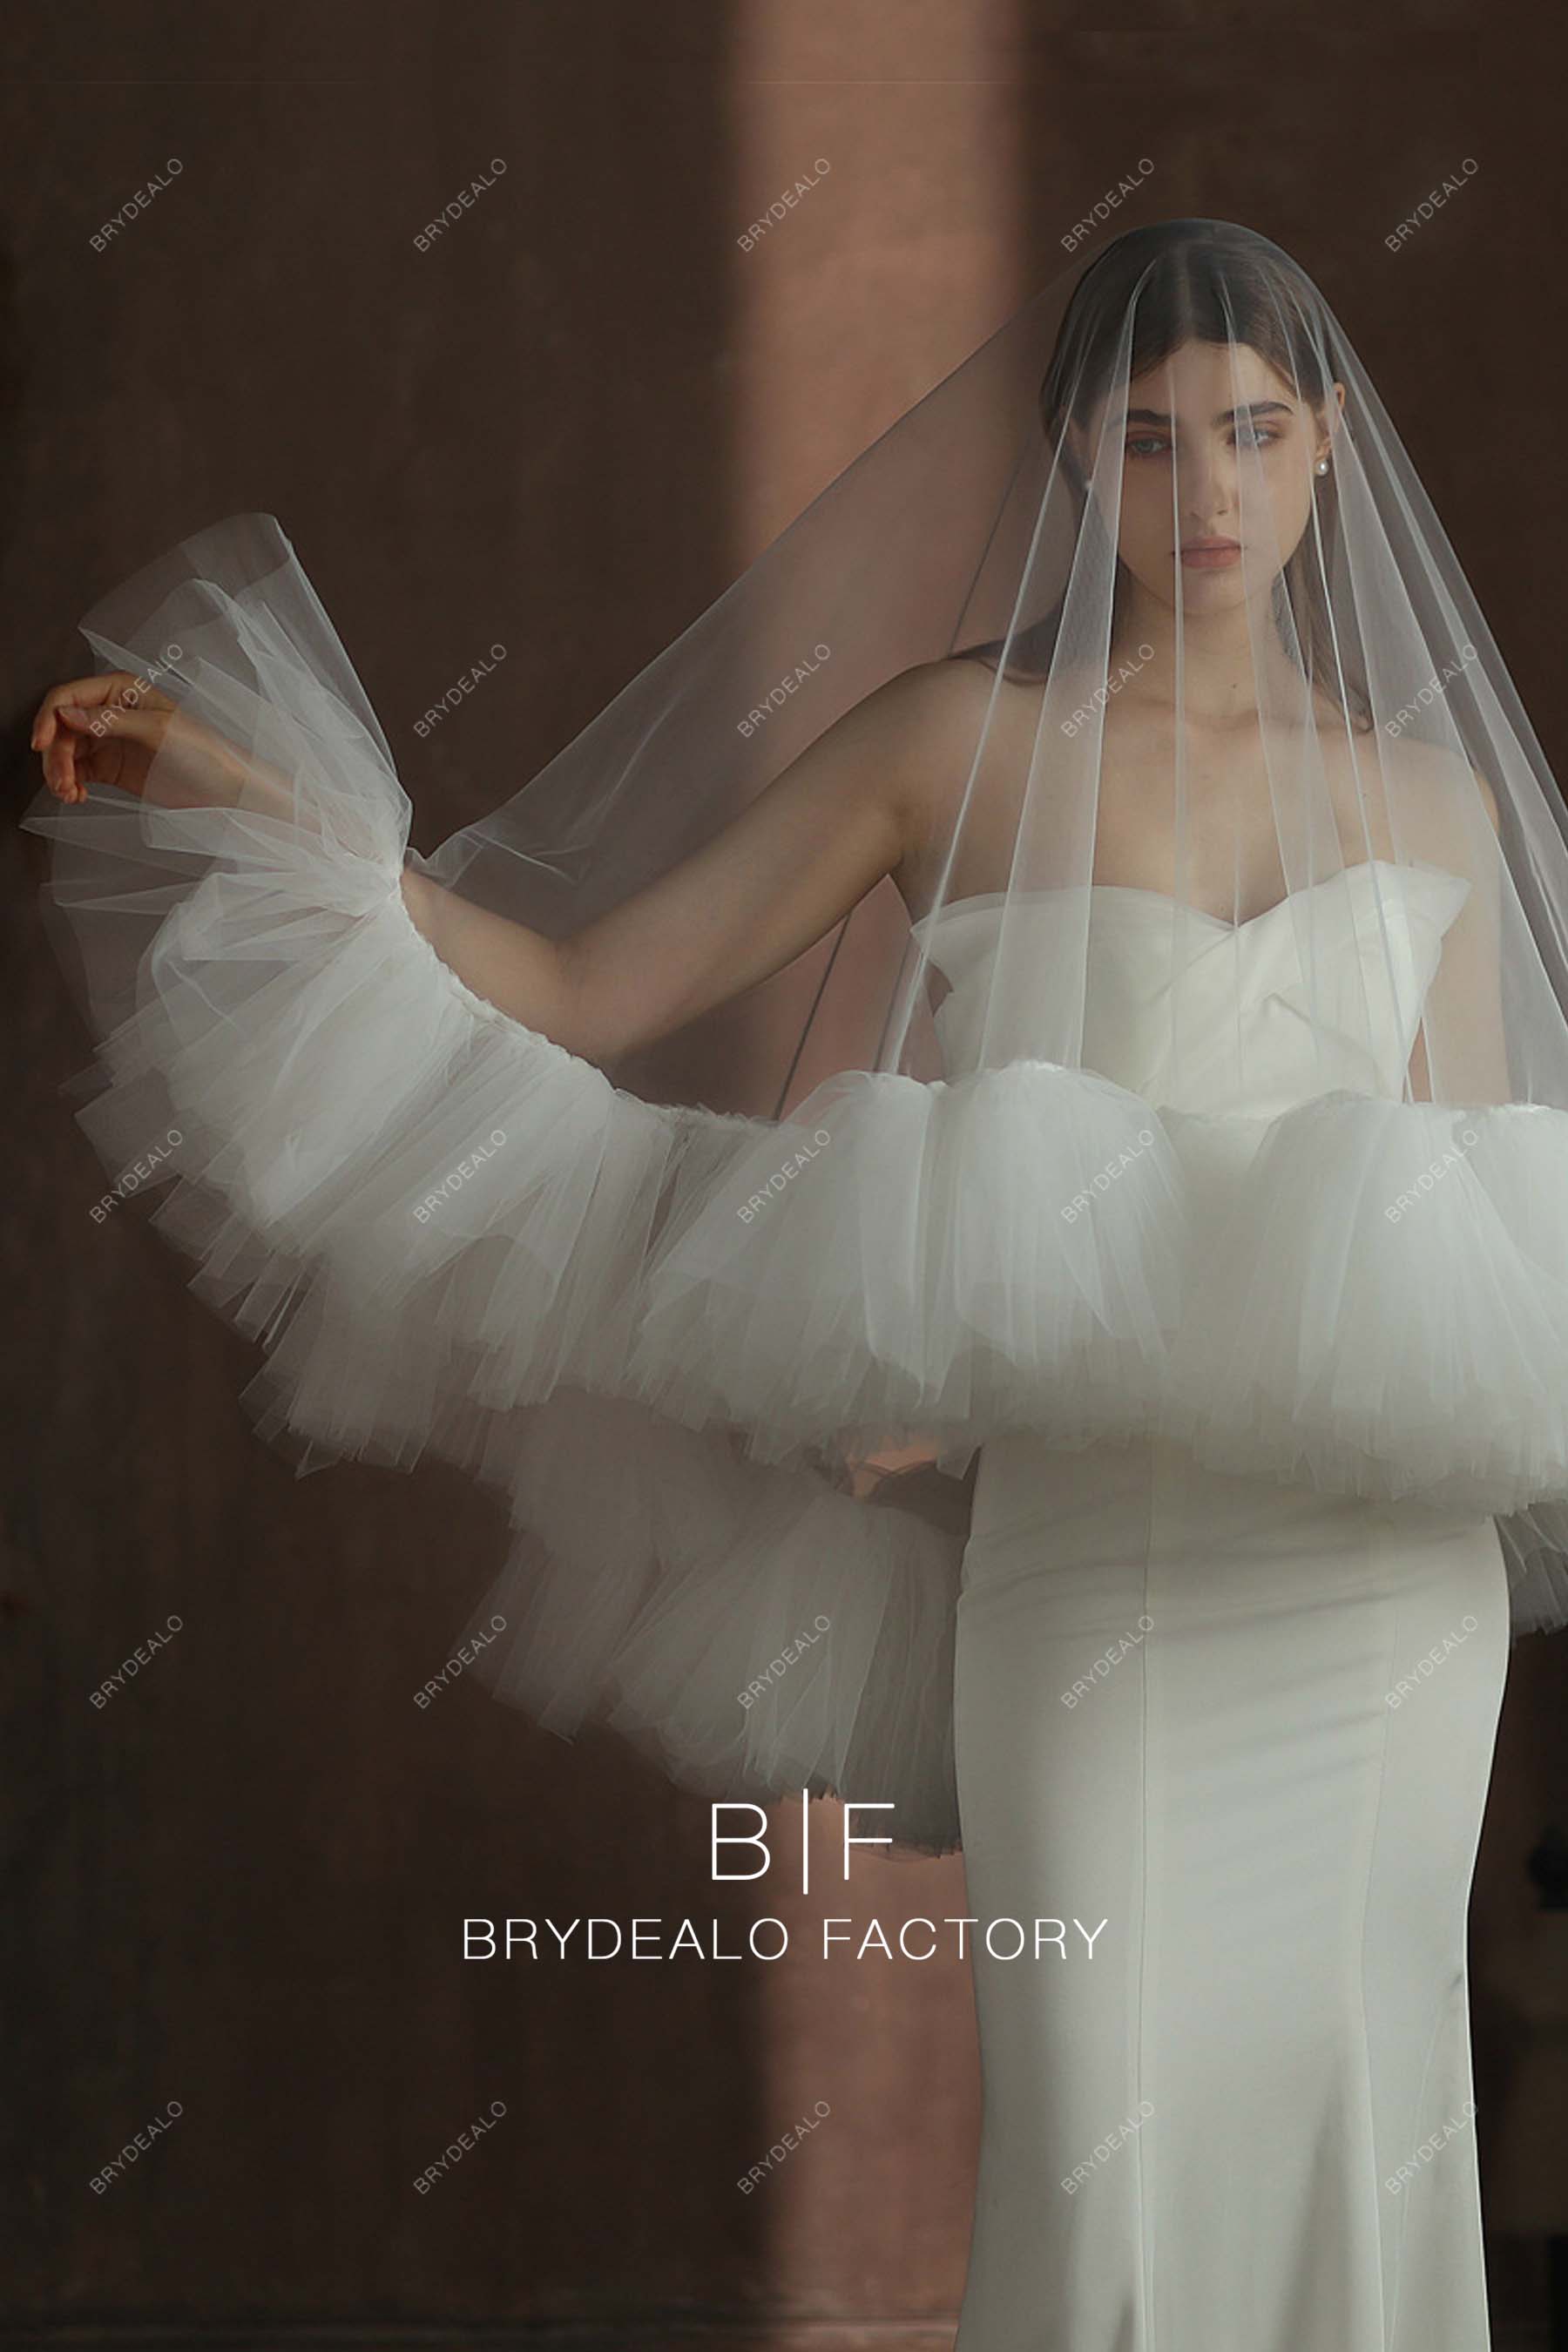 Designer Ruffles Tulle Wedding Veil for sale